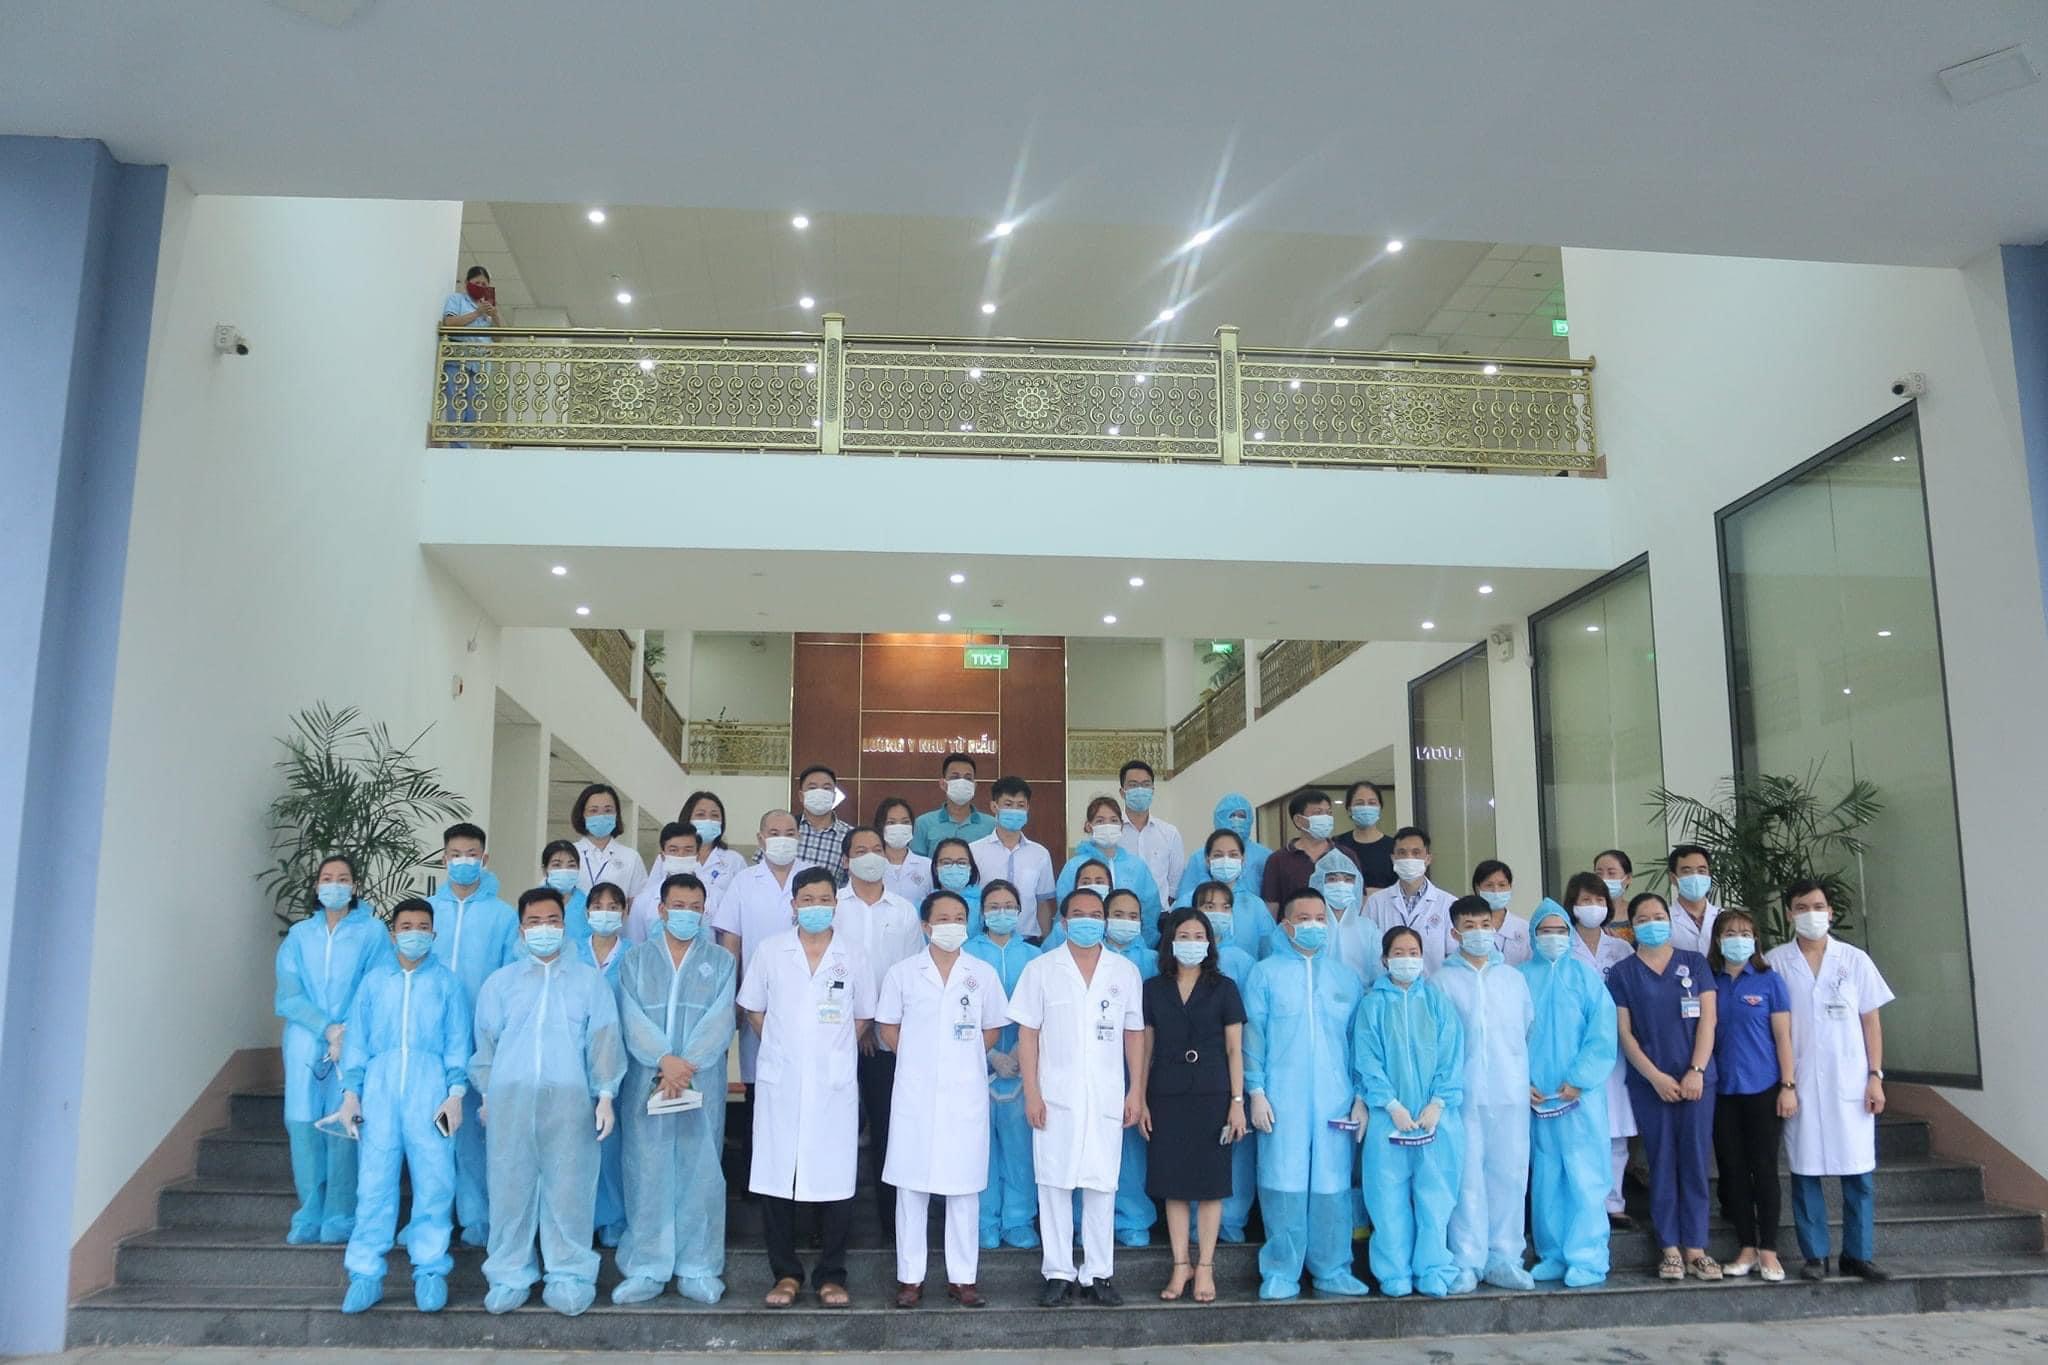 Tuổi trẻ Bệnh viện Trung ương Thái Nguyên - lực lượng nòng cốt trên con đường phát triển của Bệnh viện